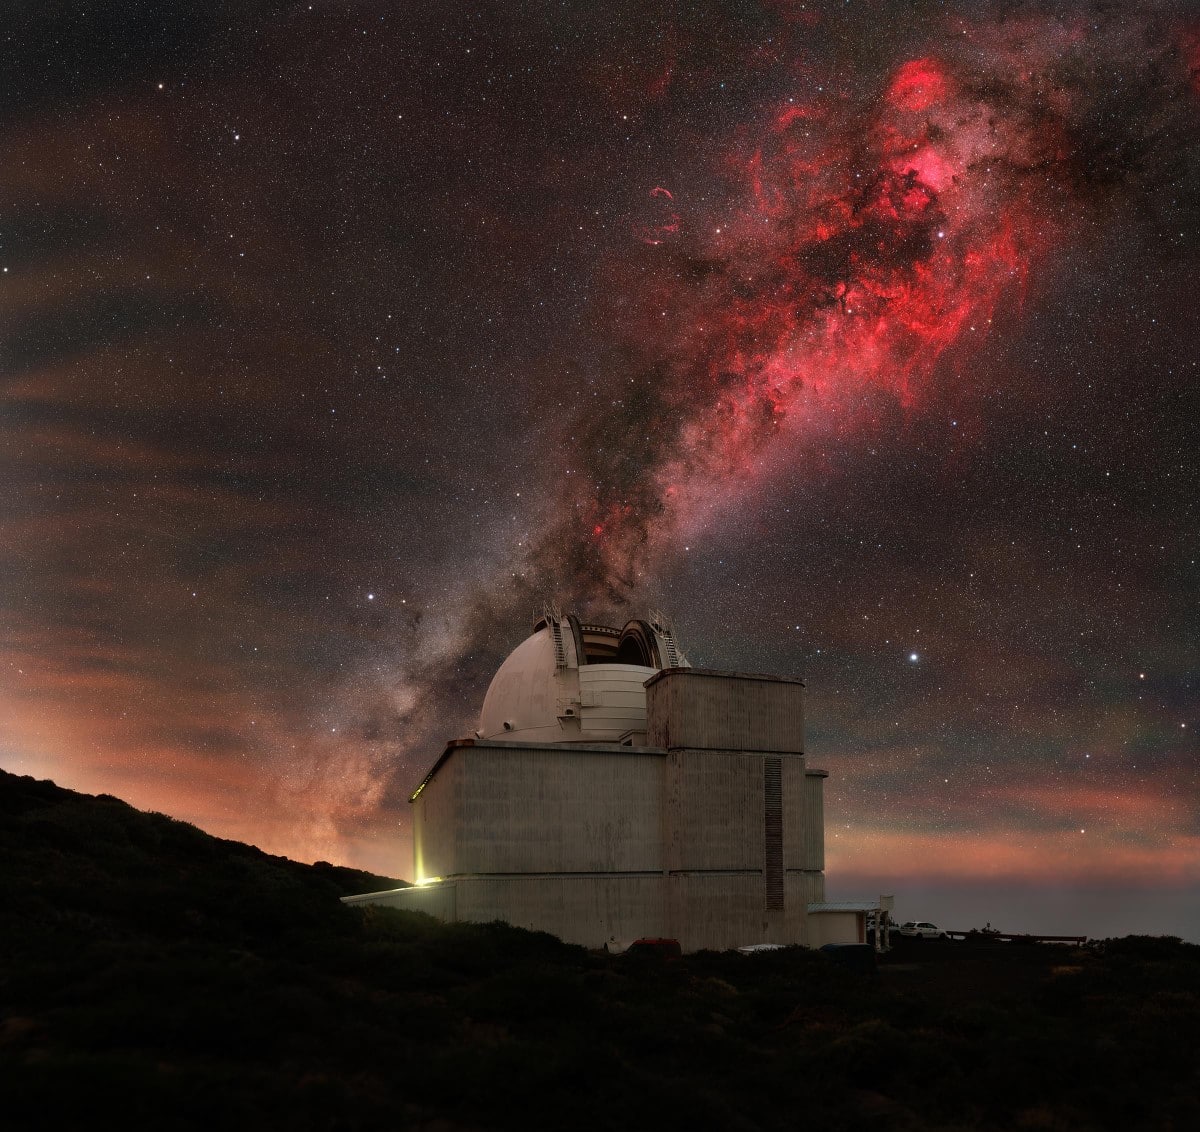  Isaac Newton Telescope at the edge of the telescope facility on La Palma